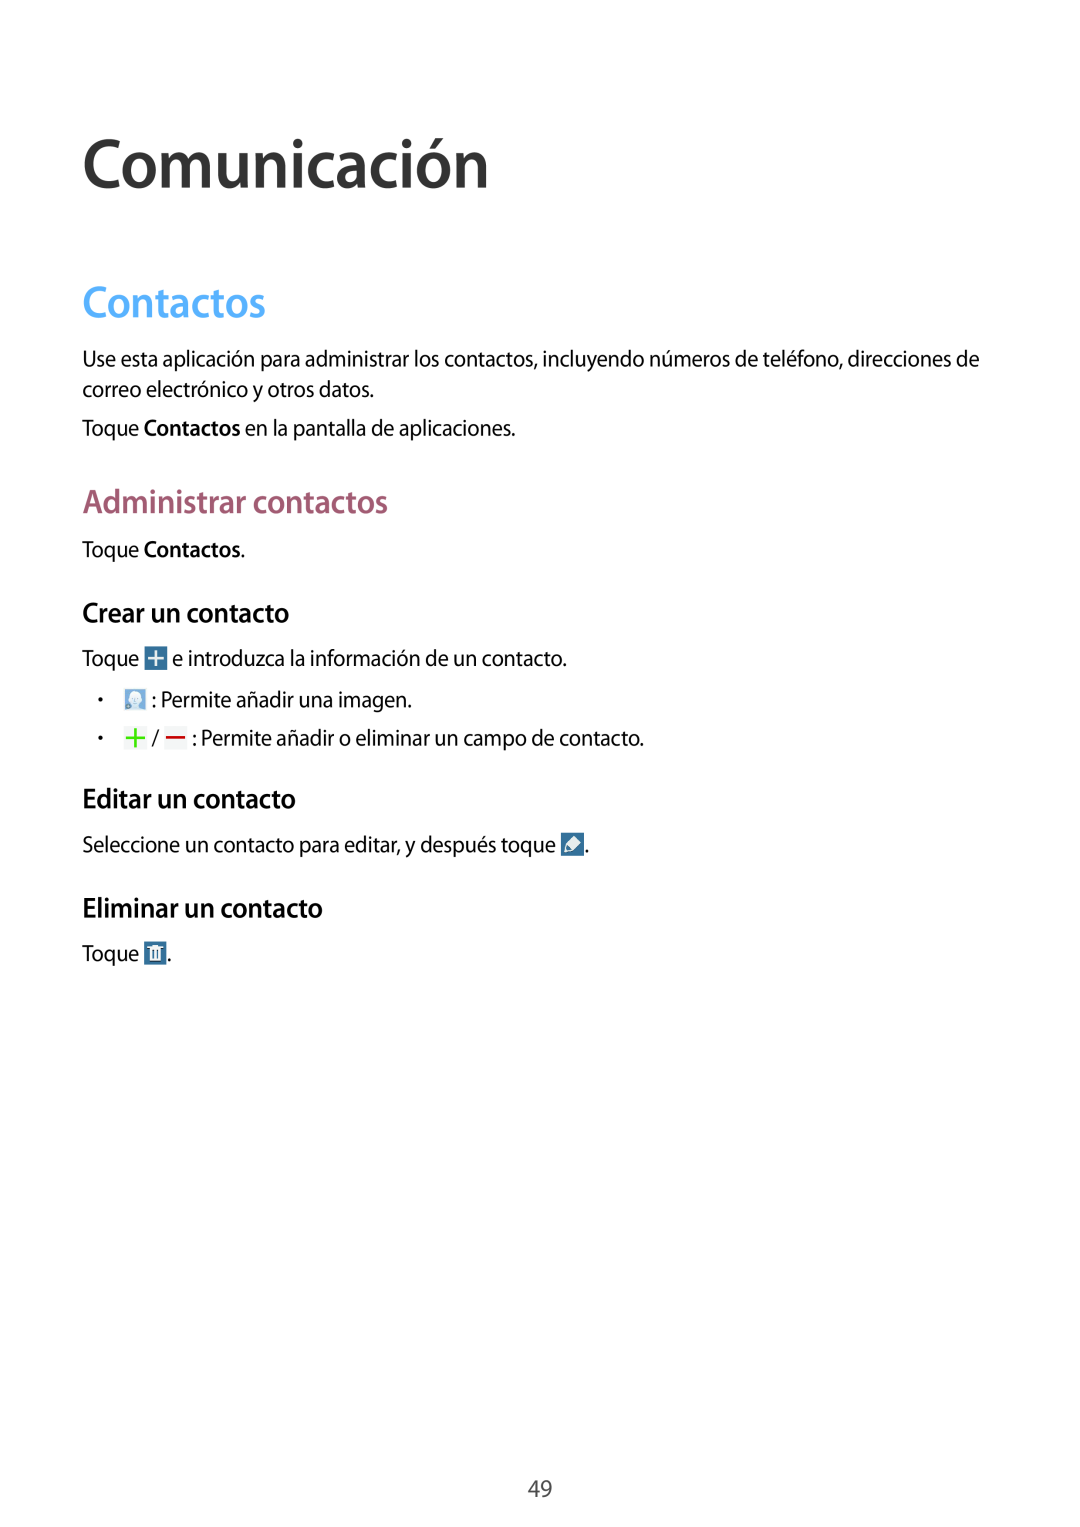 Samsung SM-T320NZWATPH manual Comunicación, Contactos, Administrar contactos, Crear un contacto, Editar un contacto 